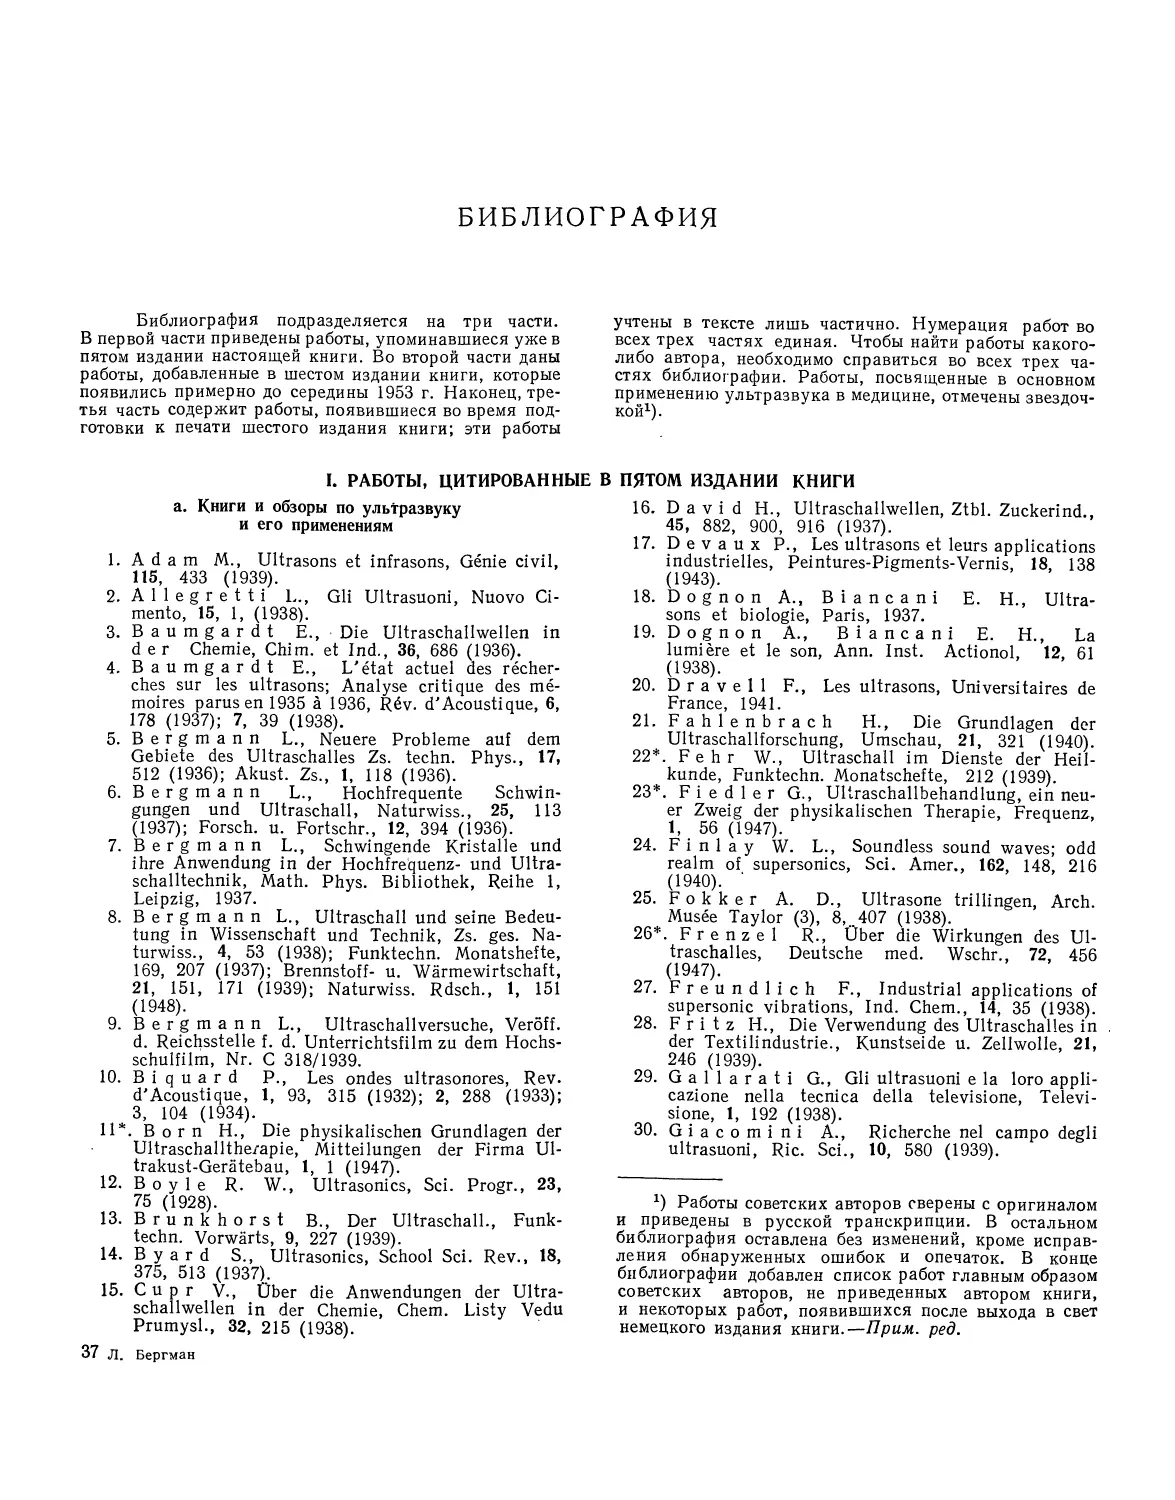 Библиография
I. Работы, цитированные в пятом издании книги